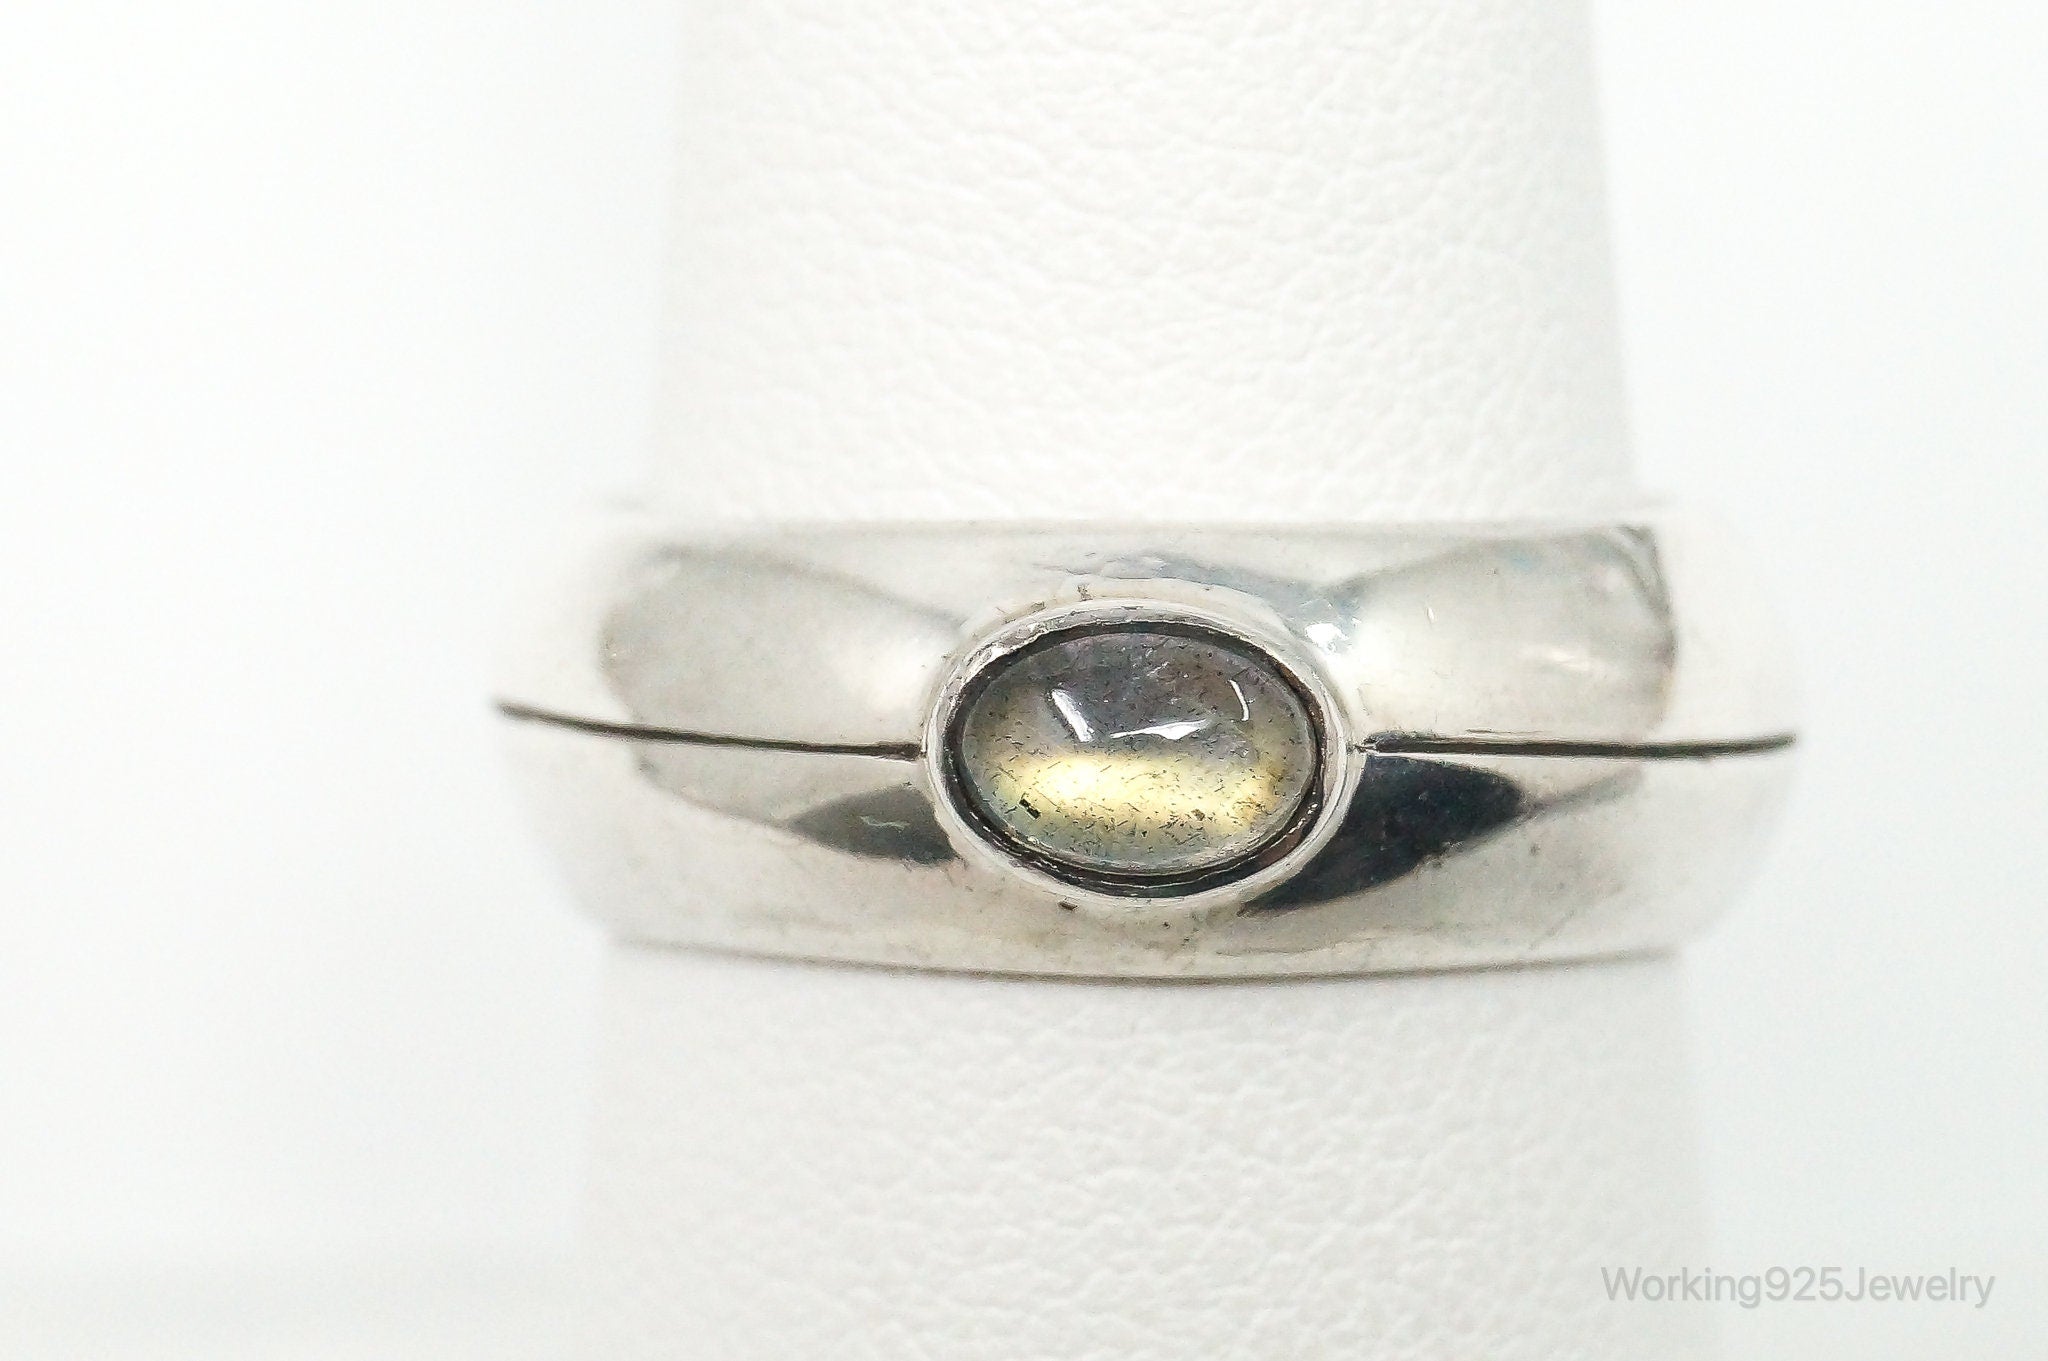 Vintage Modernist Labradorite Sterling Silver Ring - Size 7.75